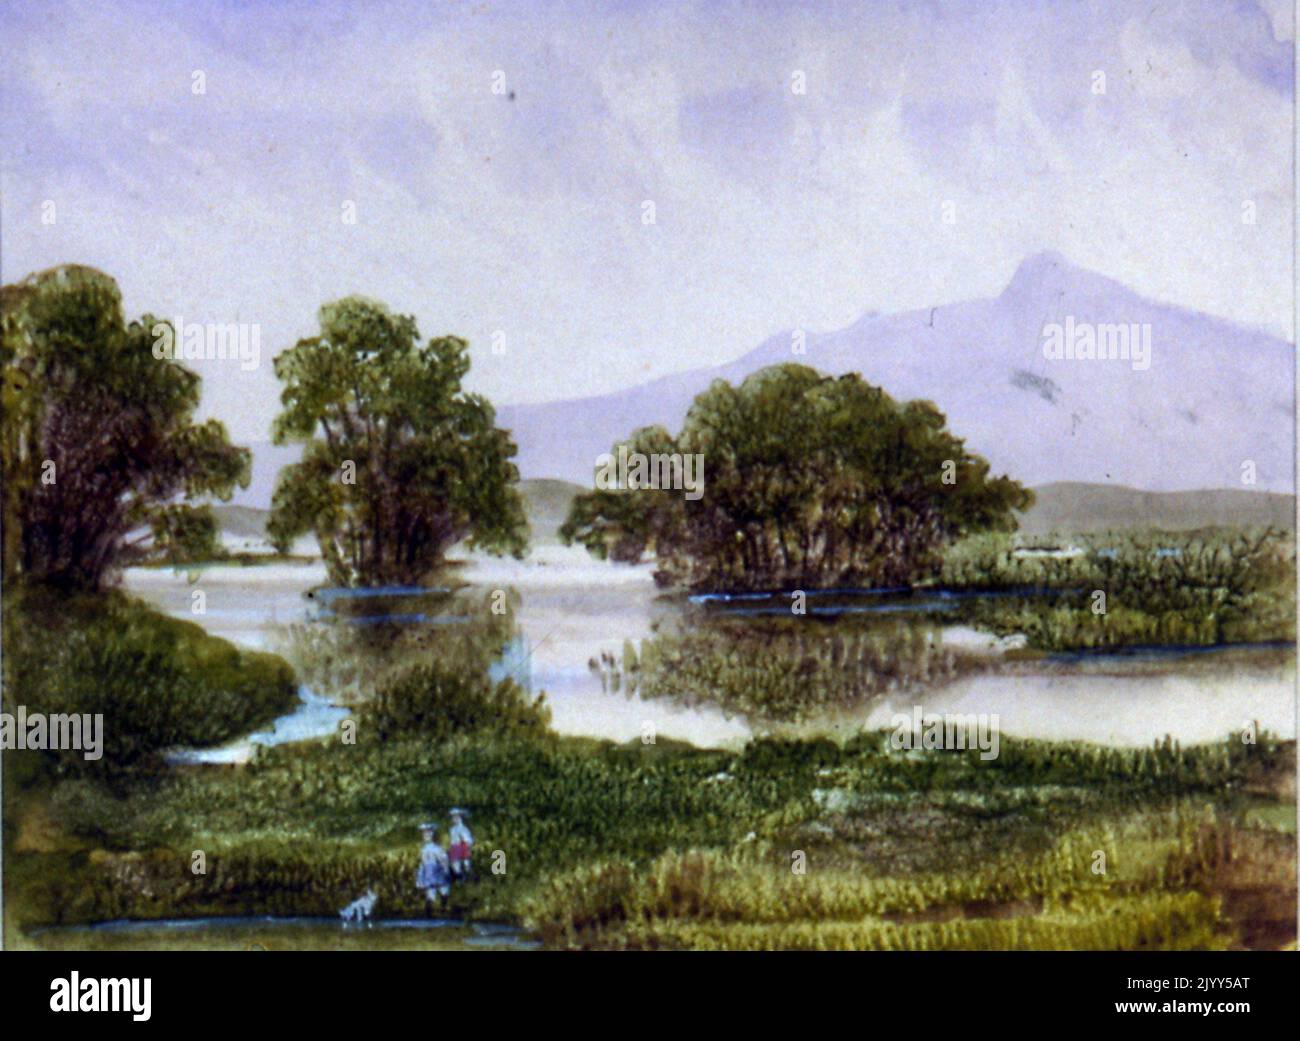 Aquarelle d'un paysage de fantaisie montrant une montagne, un lac et des arbres. Par l'écrivain George Sand. Vers 1865 Banque D'Images